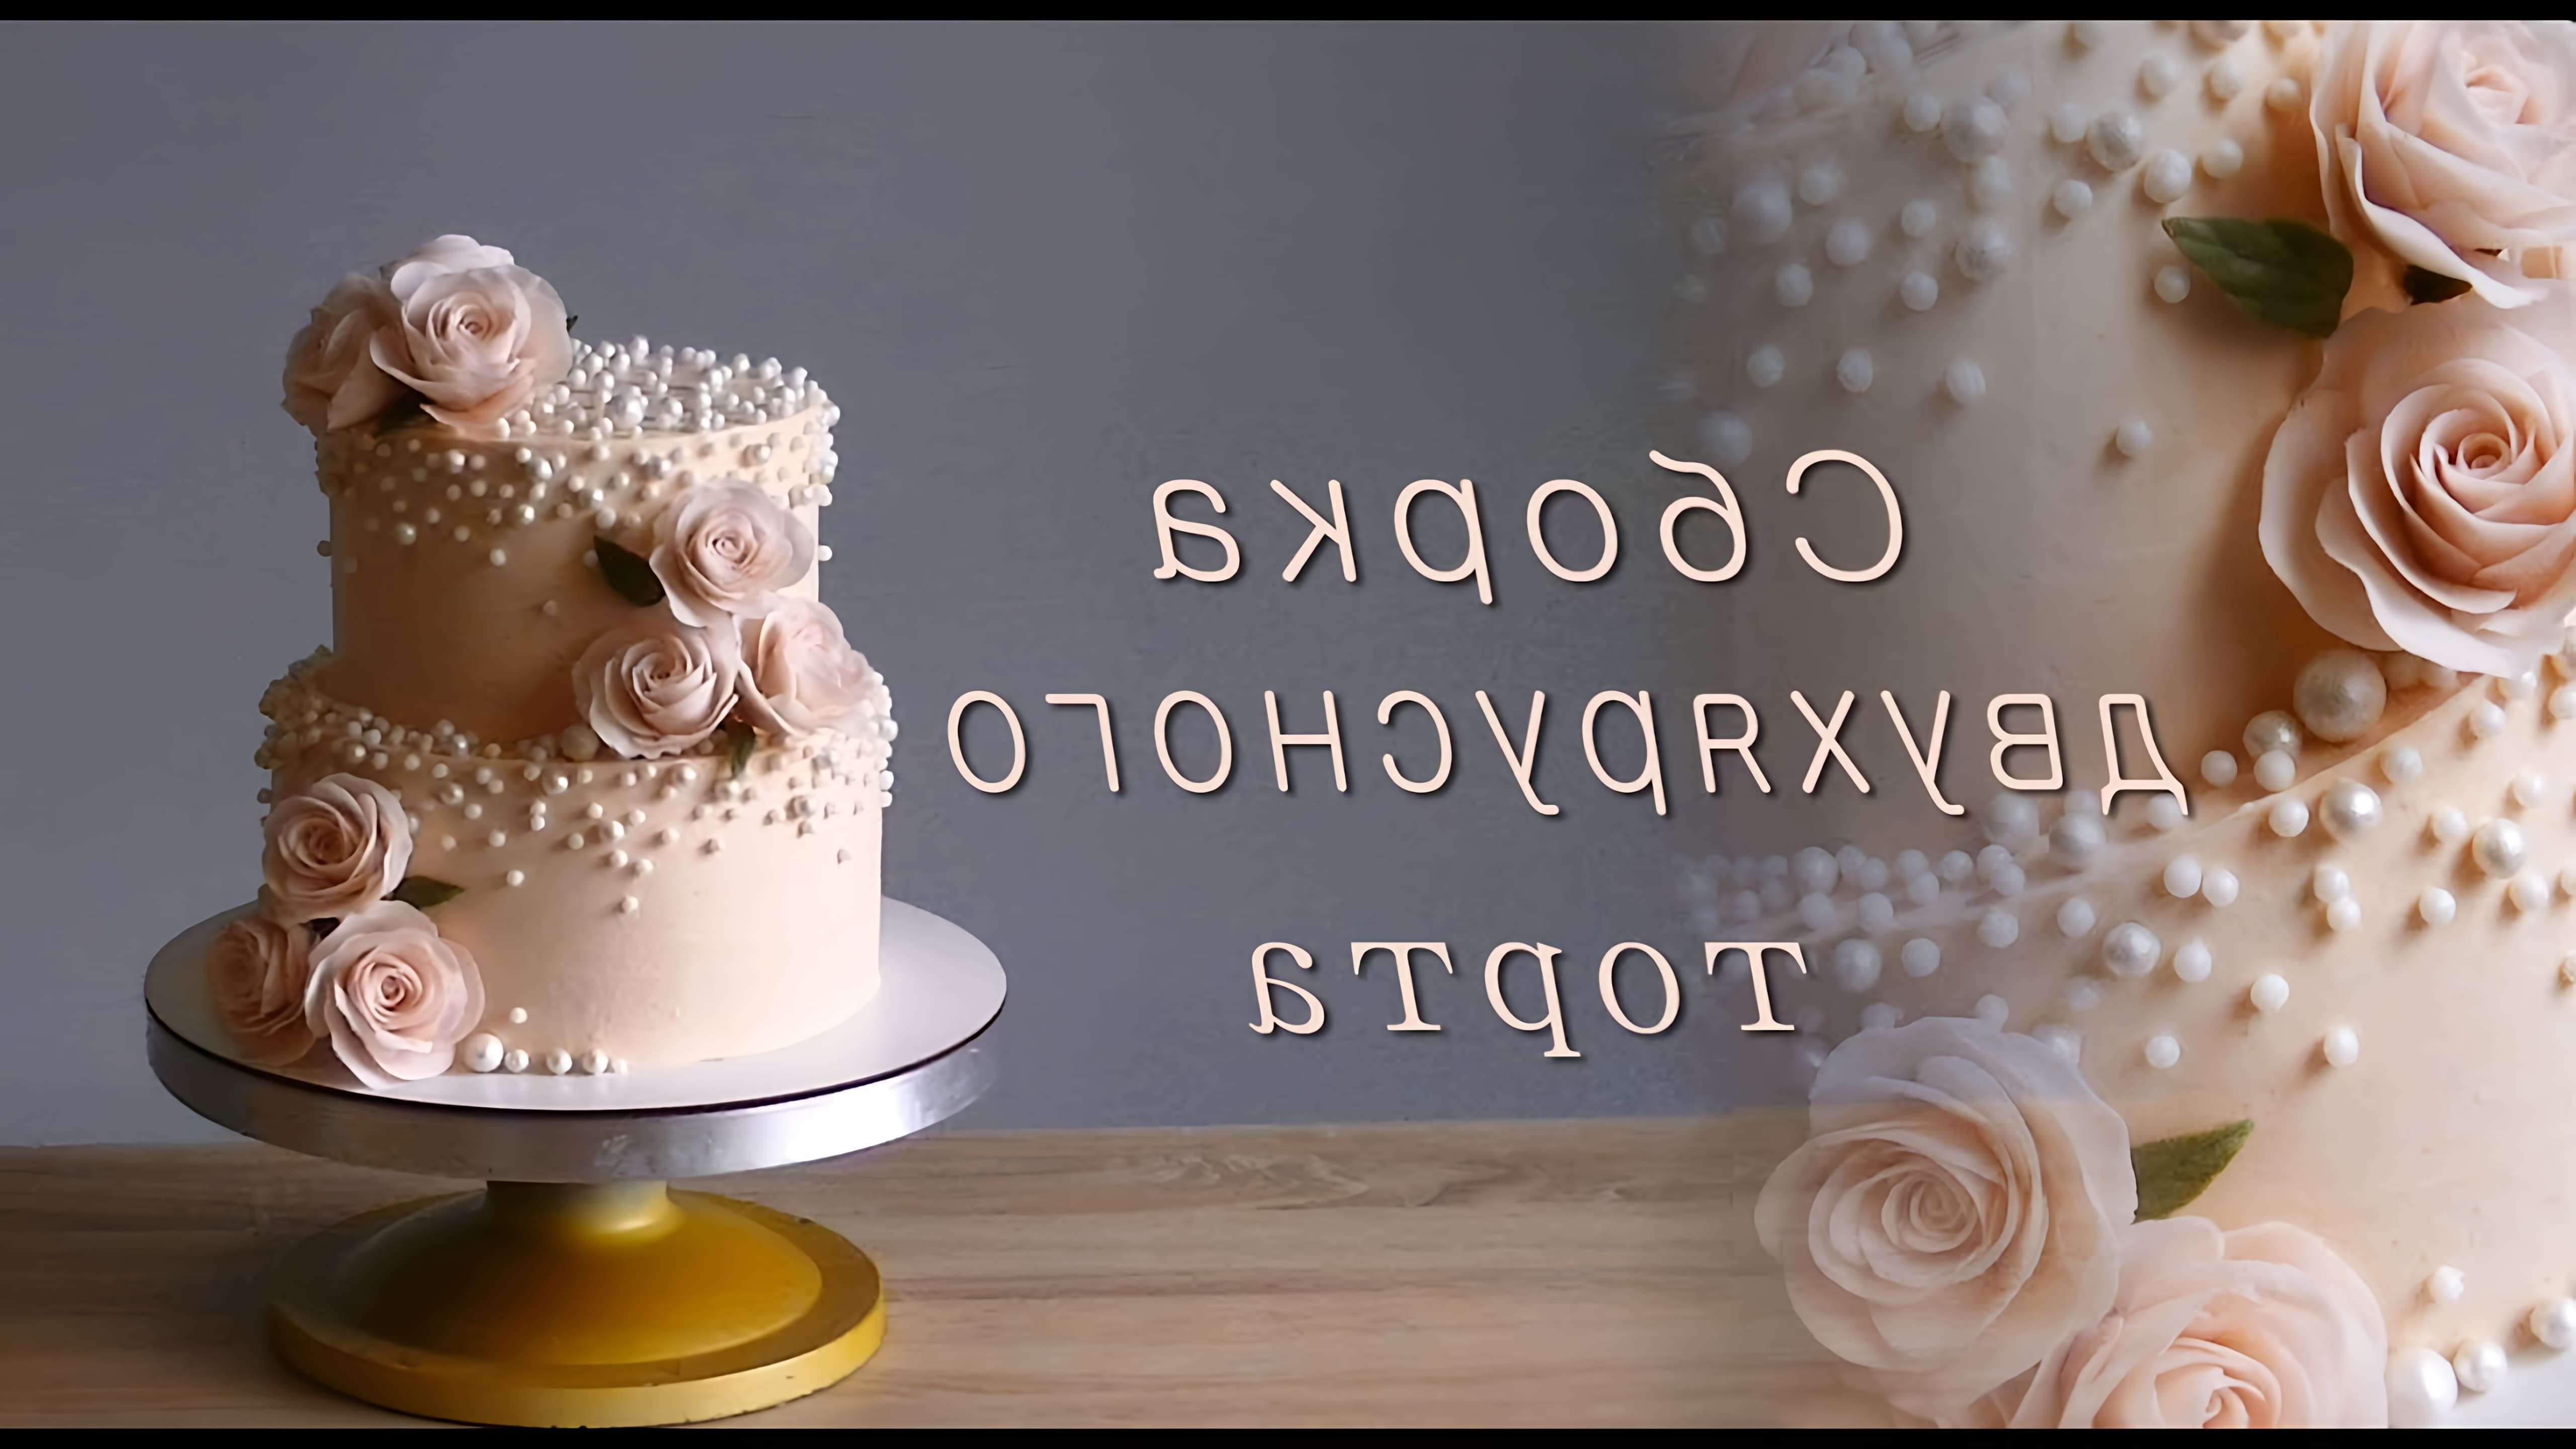 В этом видео демонстрируется процесс сборки и украшения двухъярусного торта